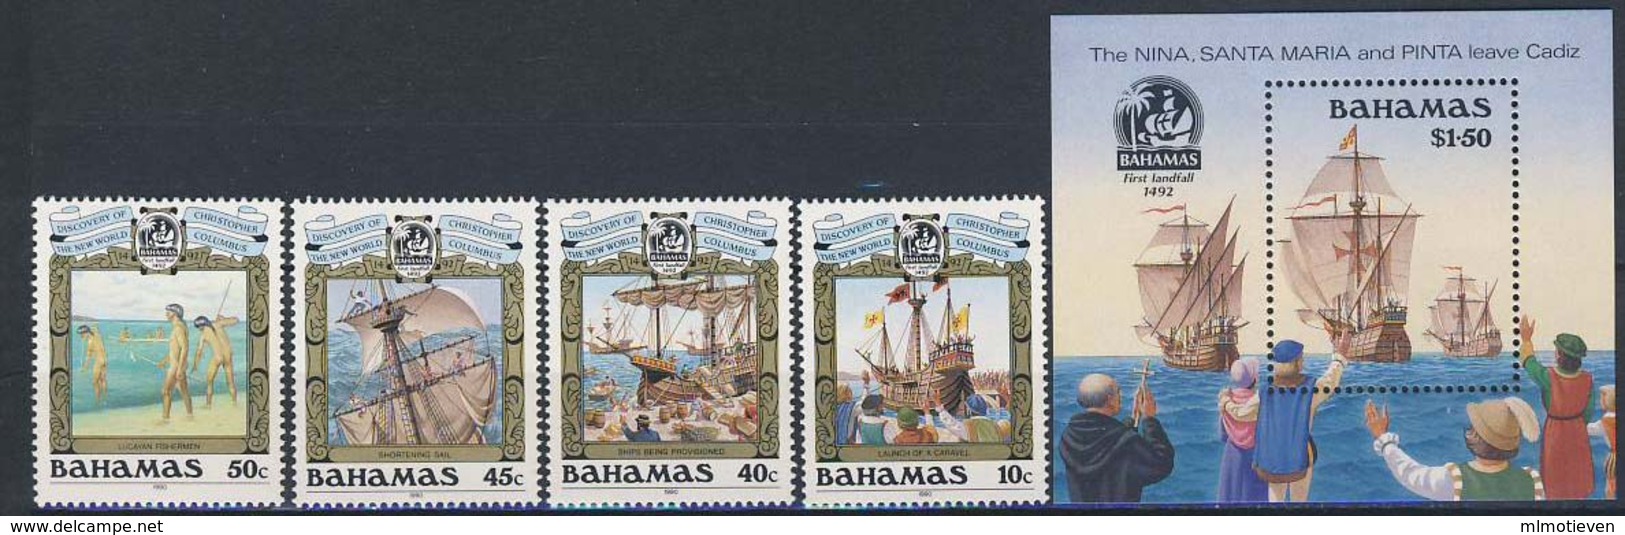 MVS-BK1-164 MINT ¤ BAHAMAS 1990 KOMPL. SET ¤ VOILIERS - ZEILSCHEPEN - SAILING SHIPS OVER THE WORLD - Maritime